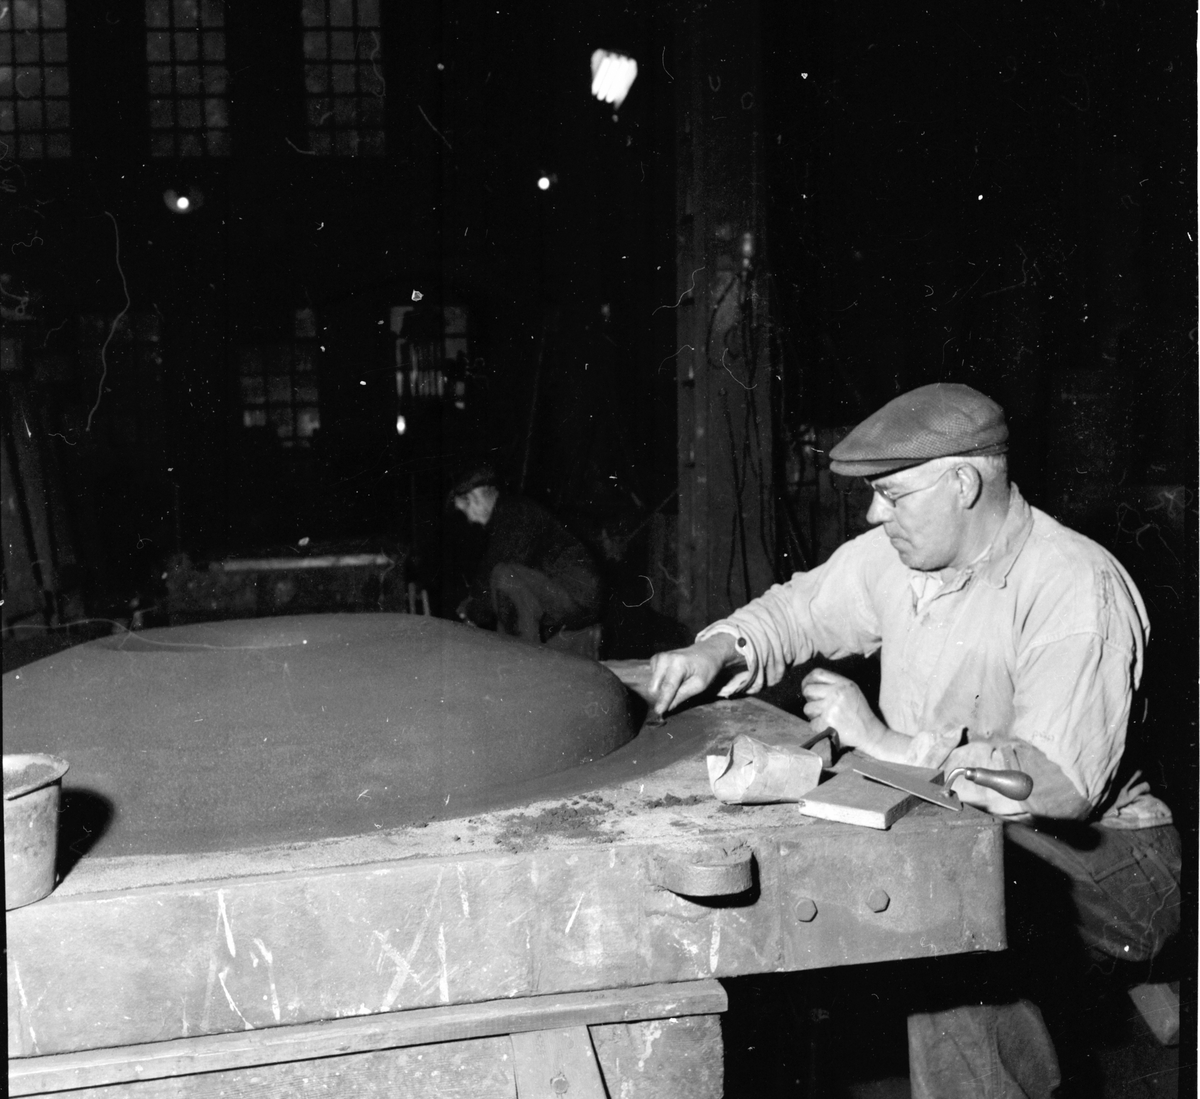 Arbrå,
Verkstaden, arbetare,
Okt 1957